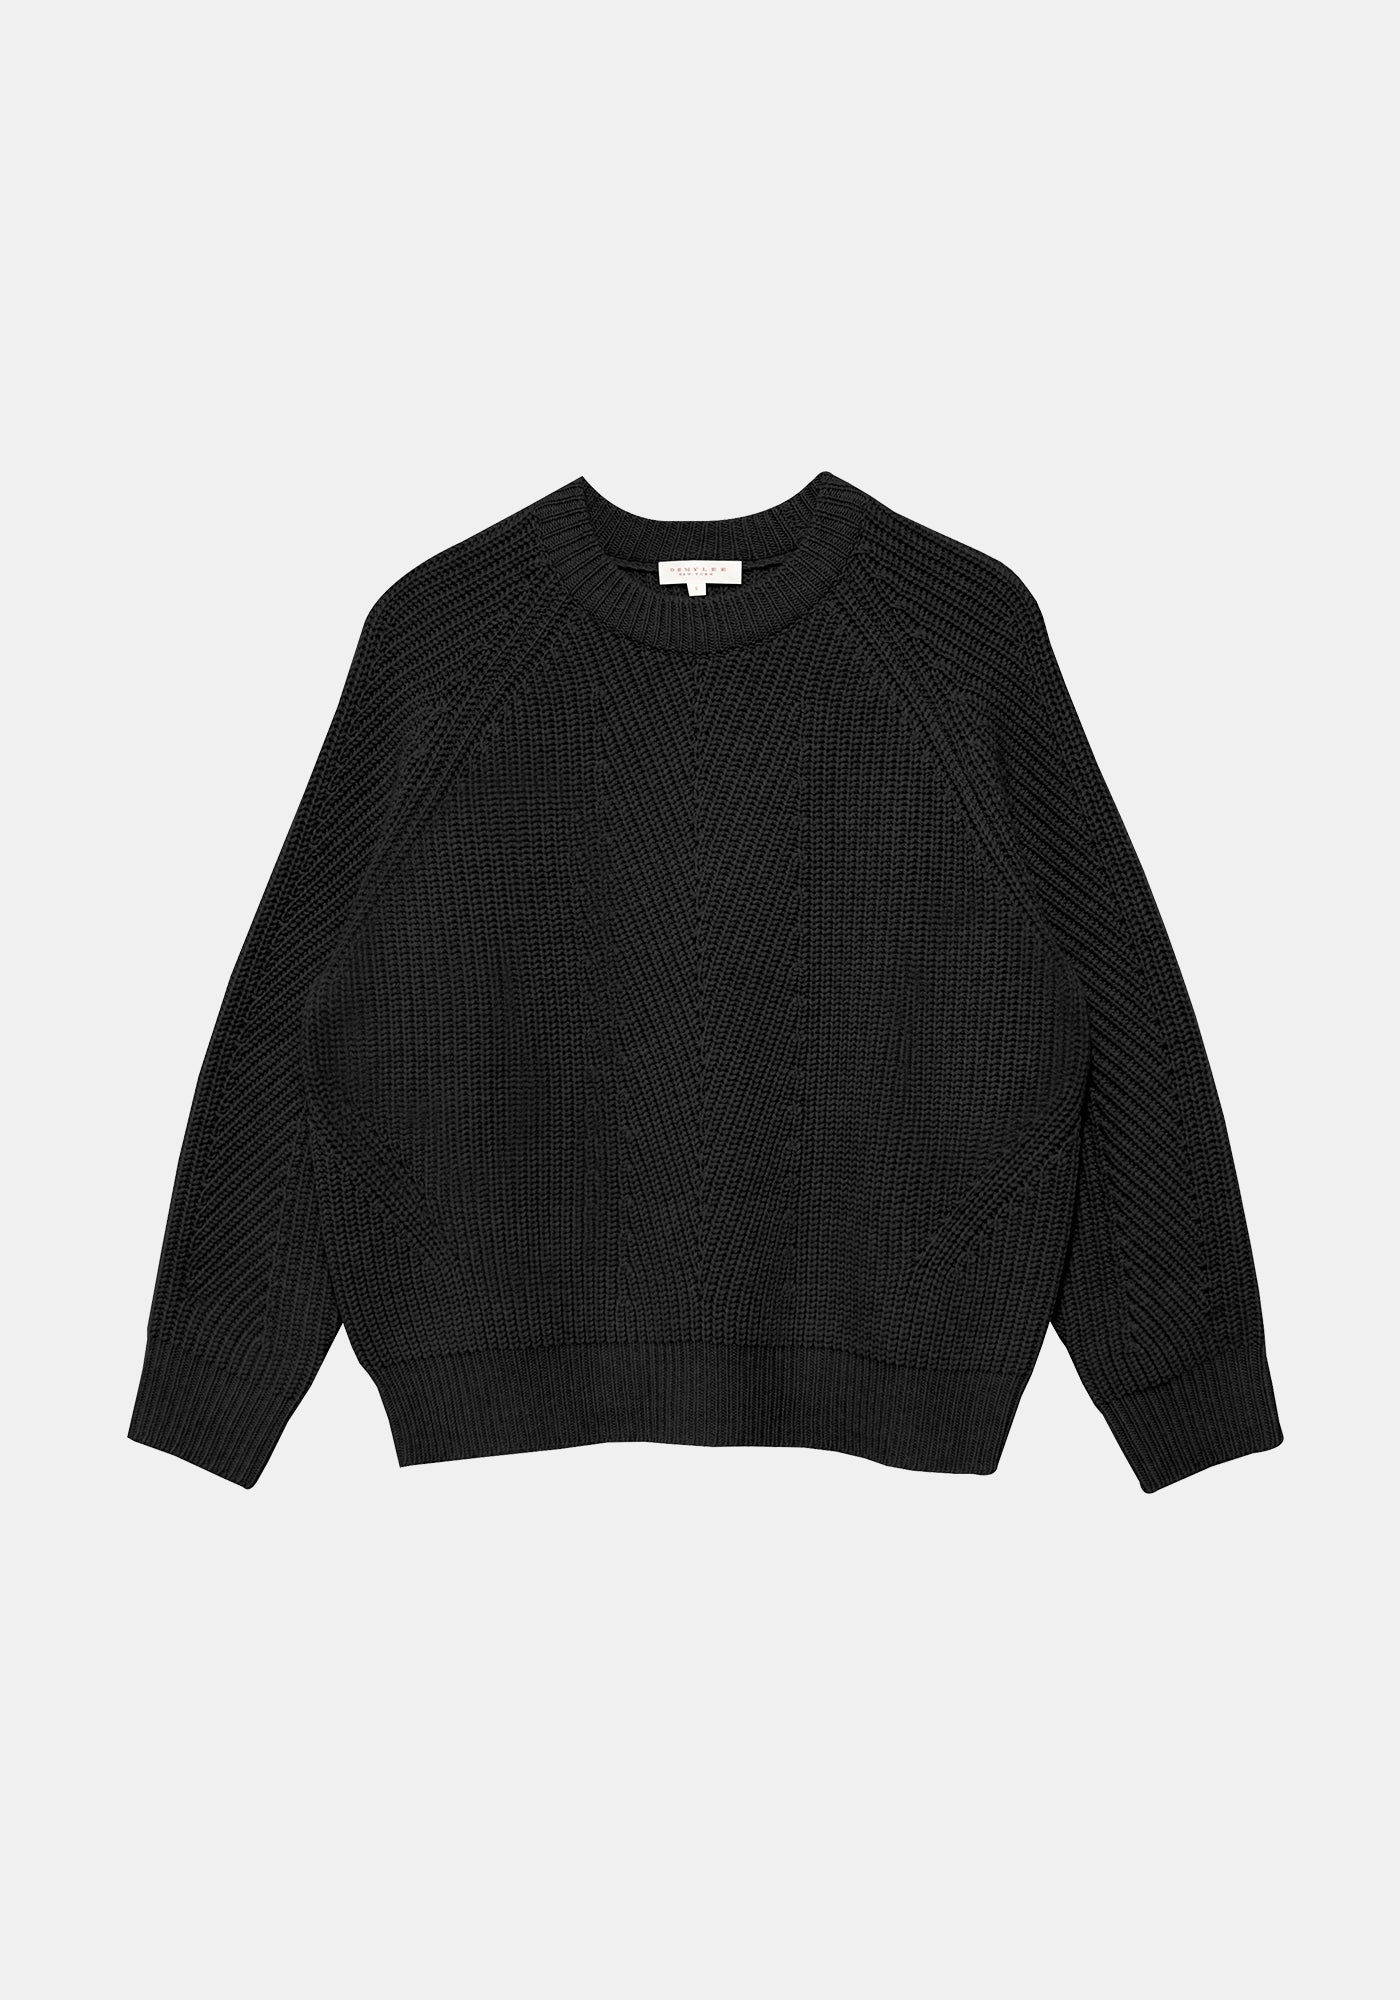 Chelsea Wool Sweater